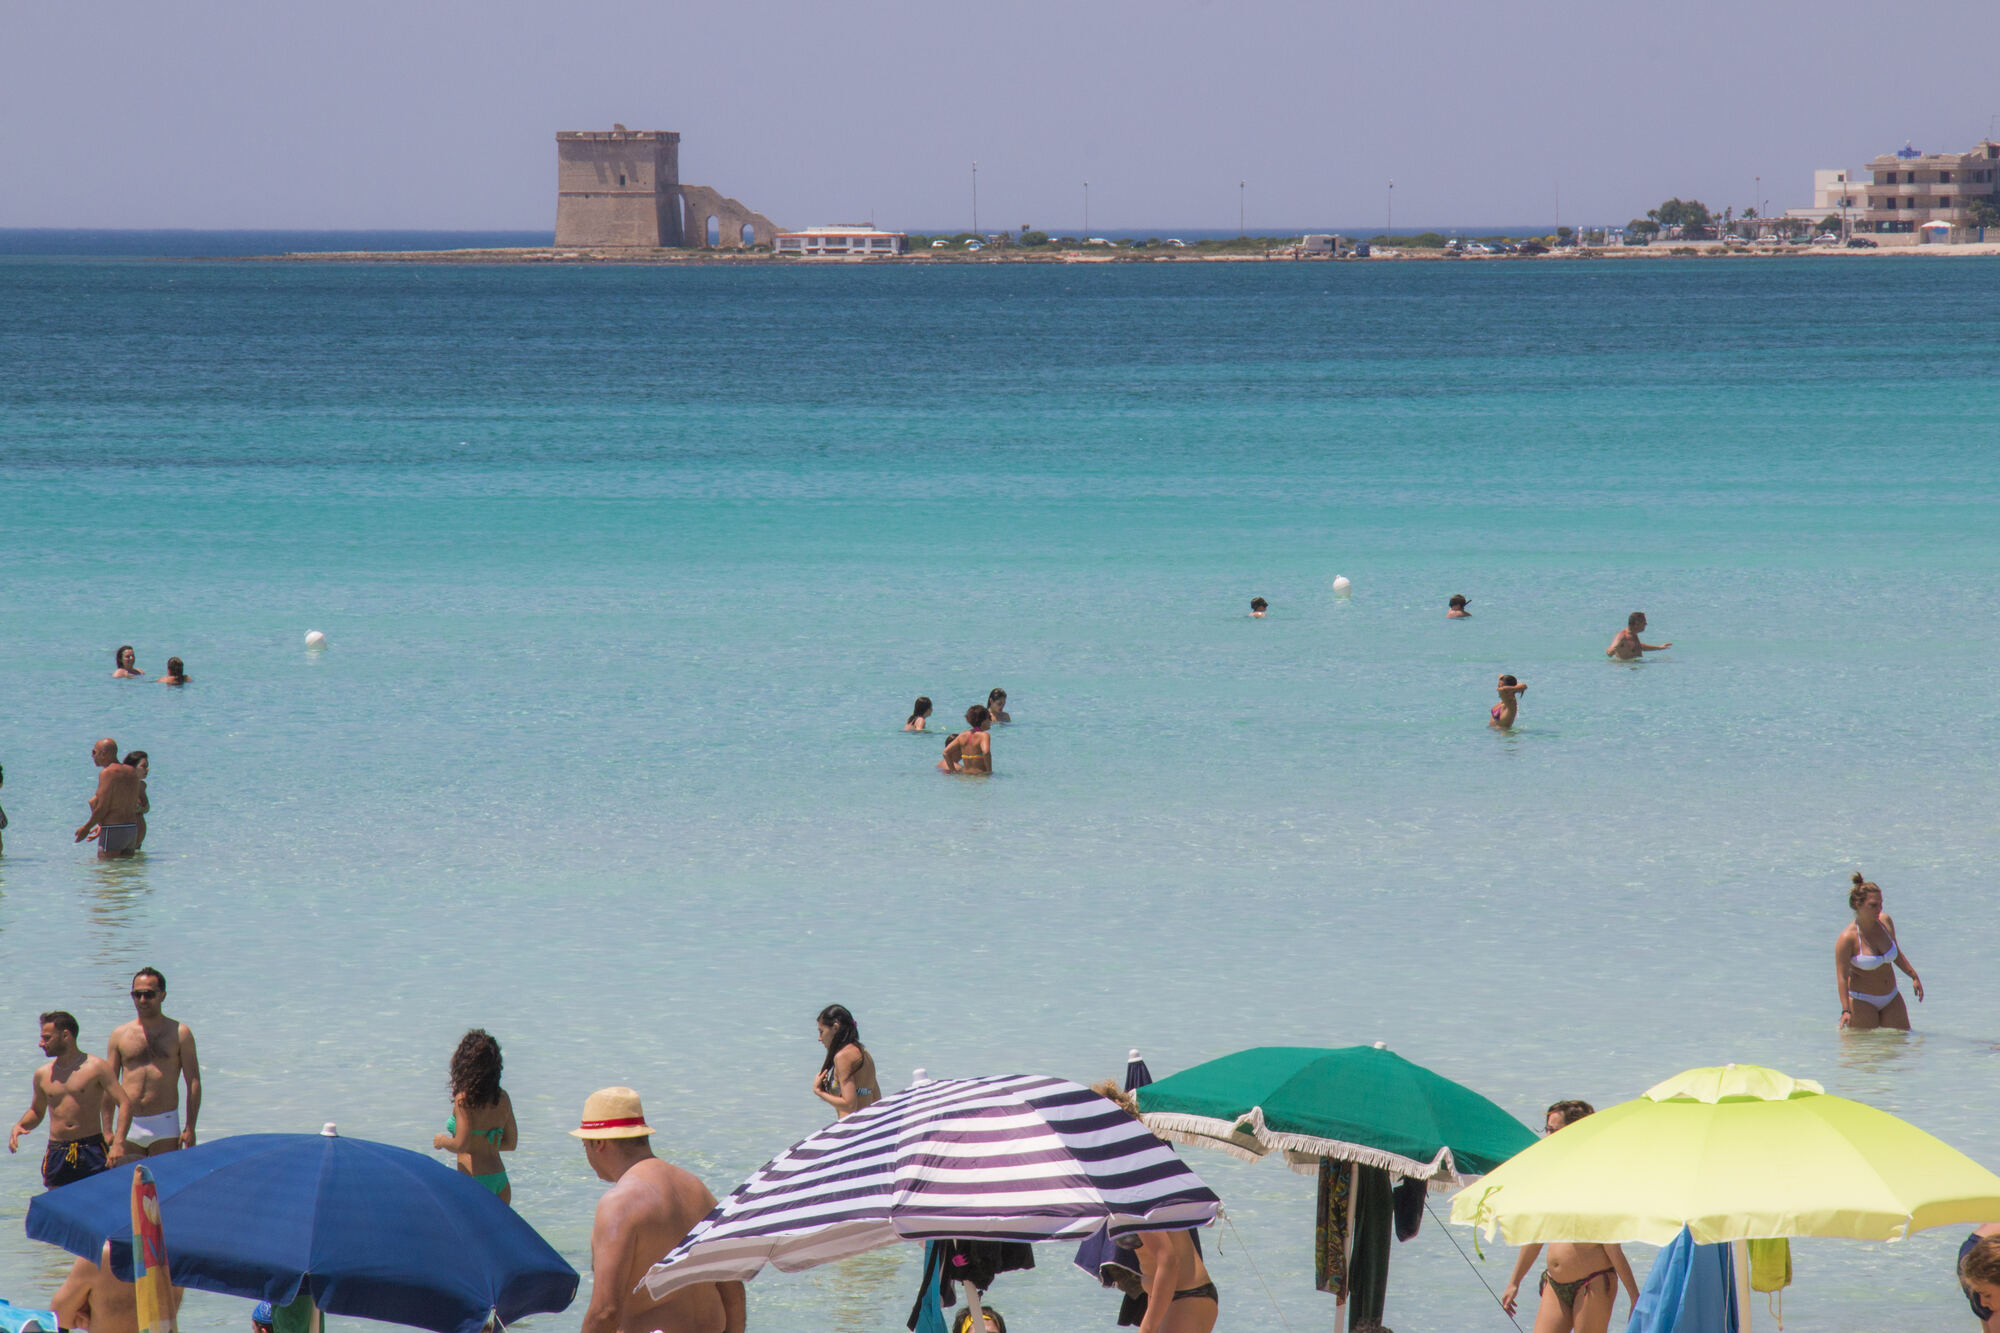 La spiaggia di Torre Lapillo, a nord di Porto Cesareo, offre sabbia chiara e finissima, acque cristalline e comfort per godersi il mare.